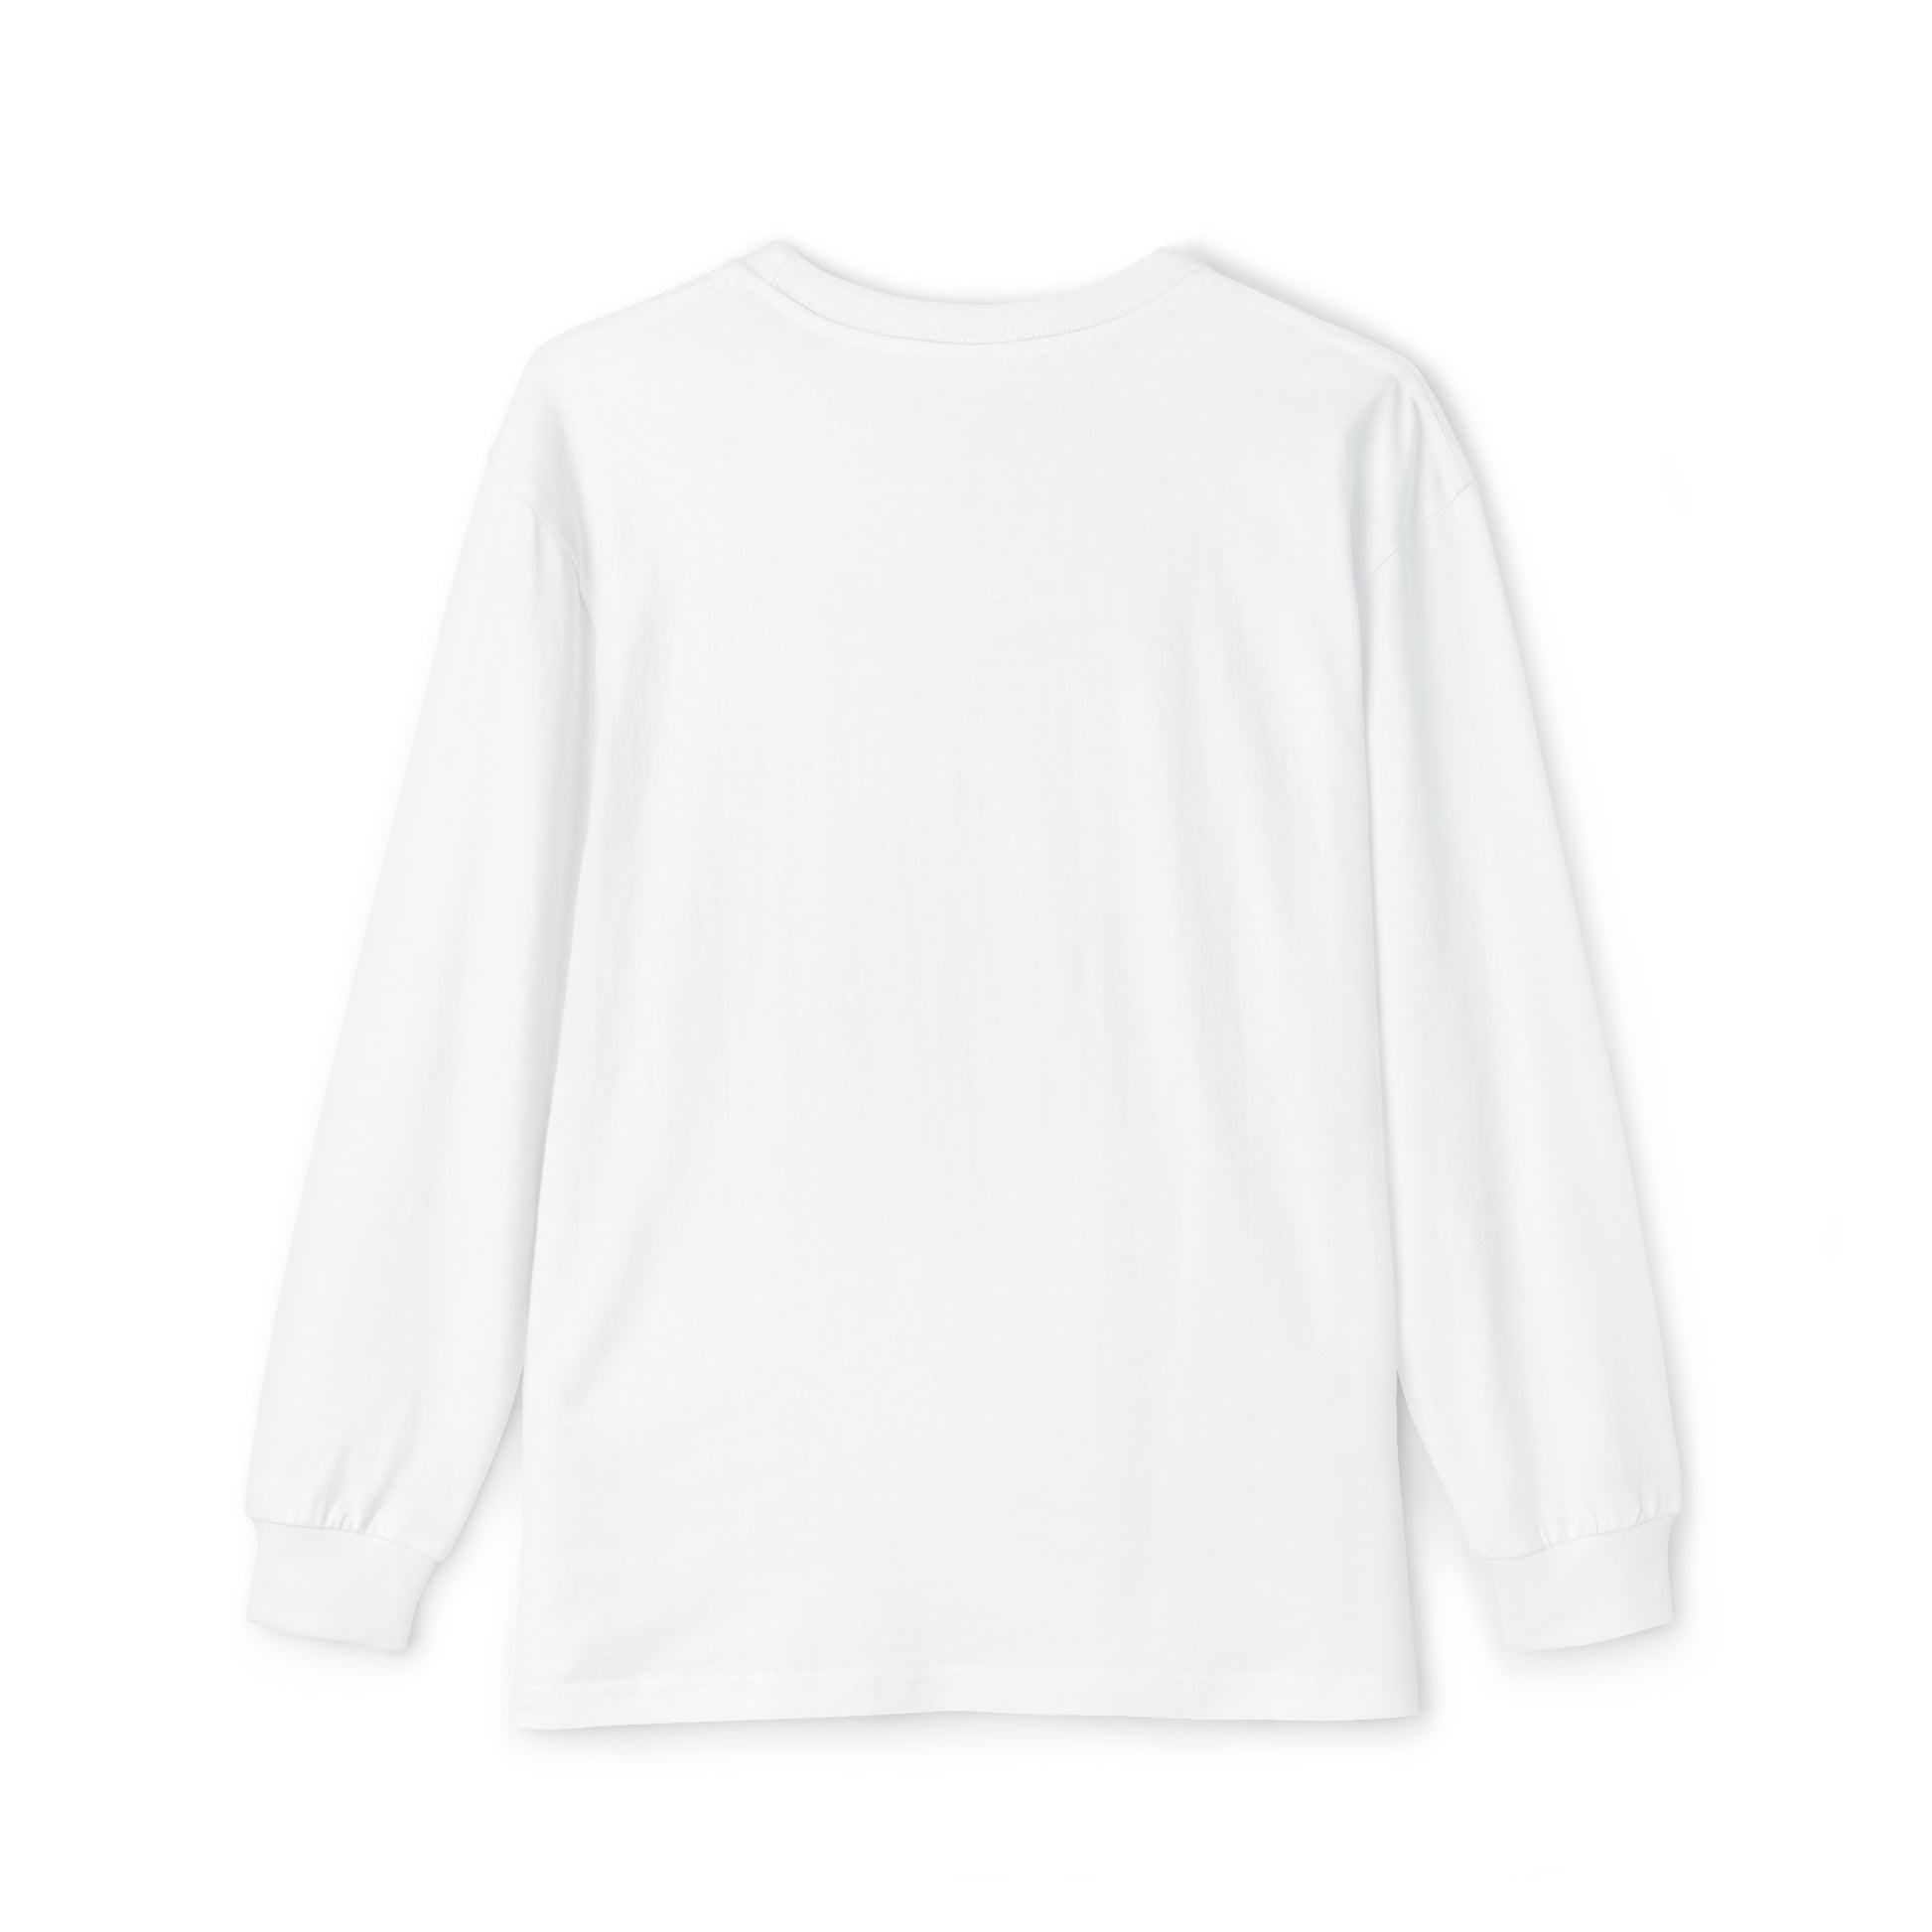 A white Printify cotton shirt.